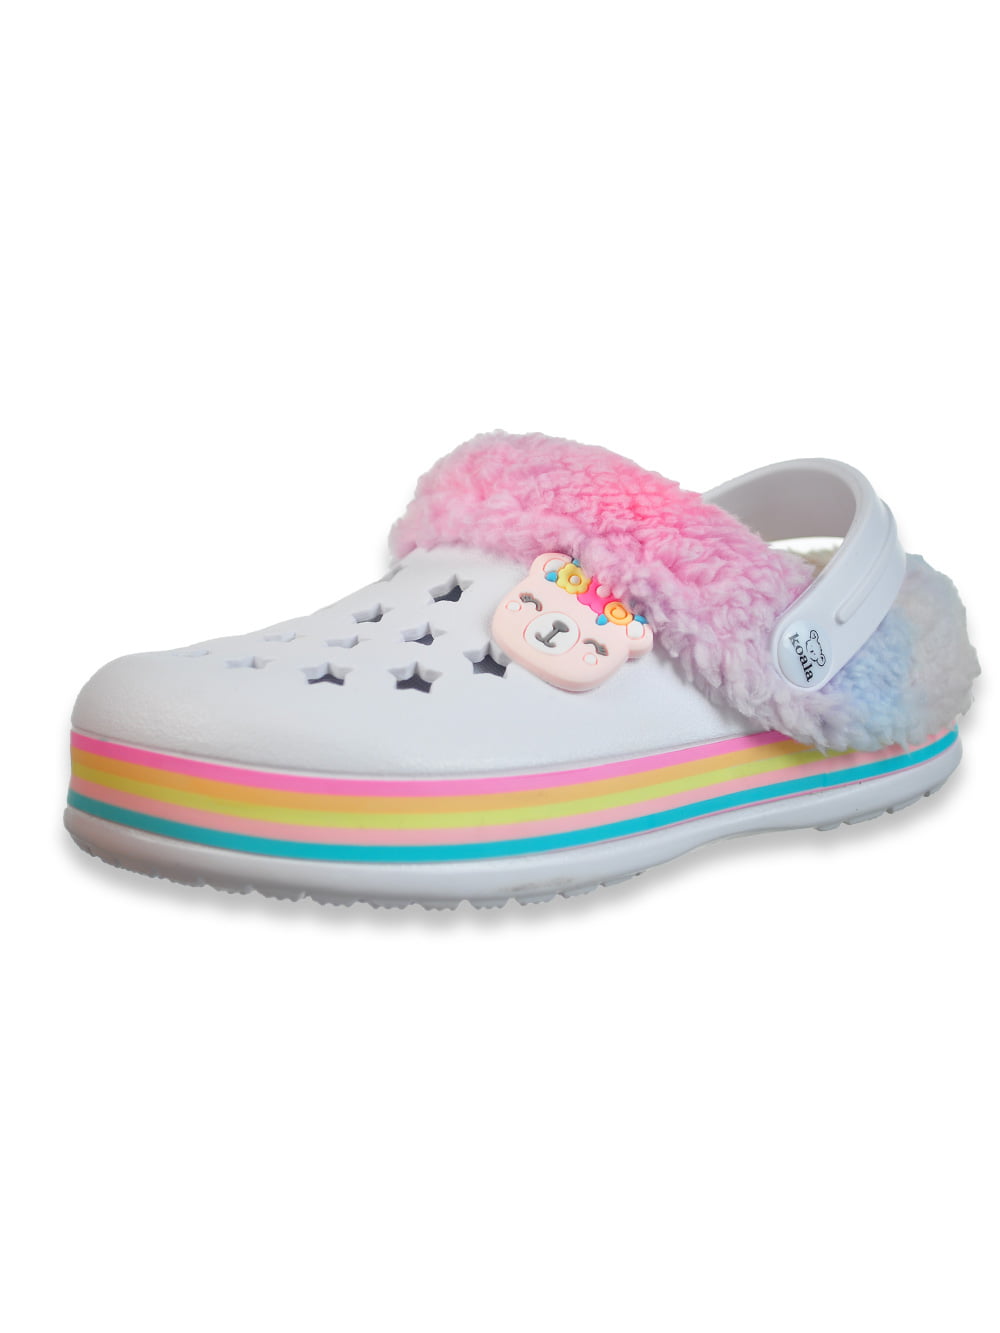 Cute Toddler Infant Kids Baby Girls Short Princess Shoes Antil-slip Solid Shoes 